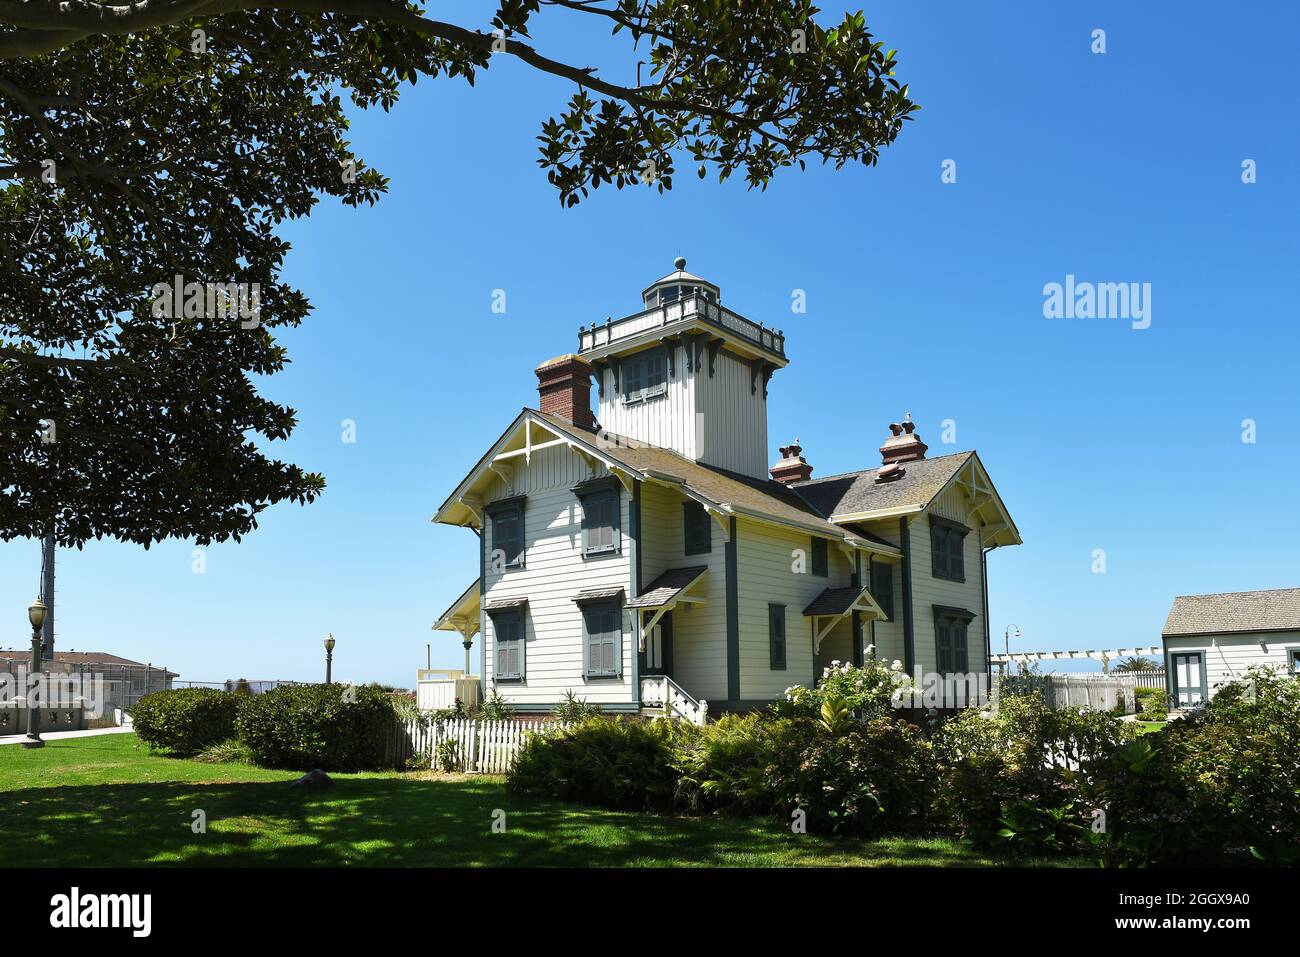 SAN PEDRO, KALIFORNIEN - 27. AUG 2021: Point Fermin Leuchtturm, eingerahmt von Bäumen, ist im National Register of Historic Places eingetragen. Stockfoto